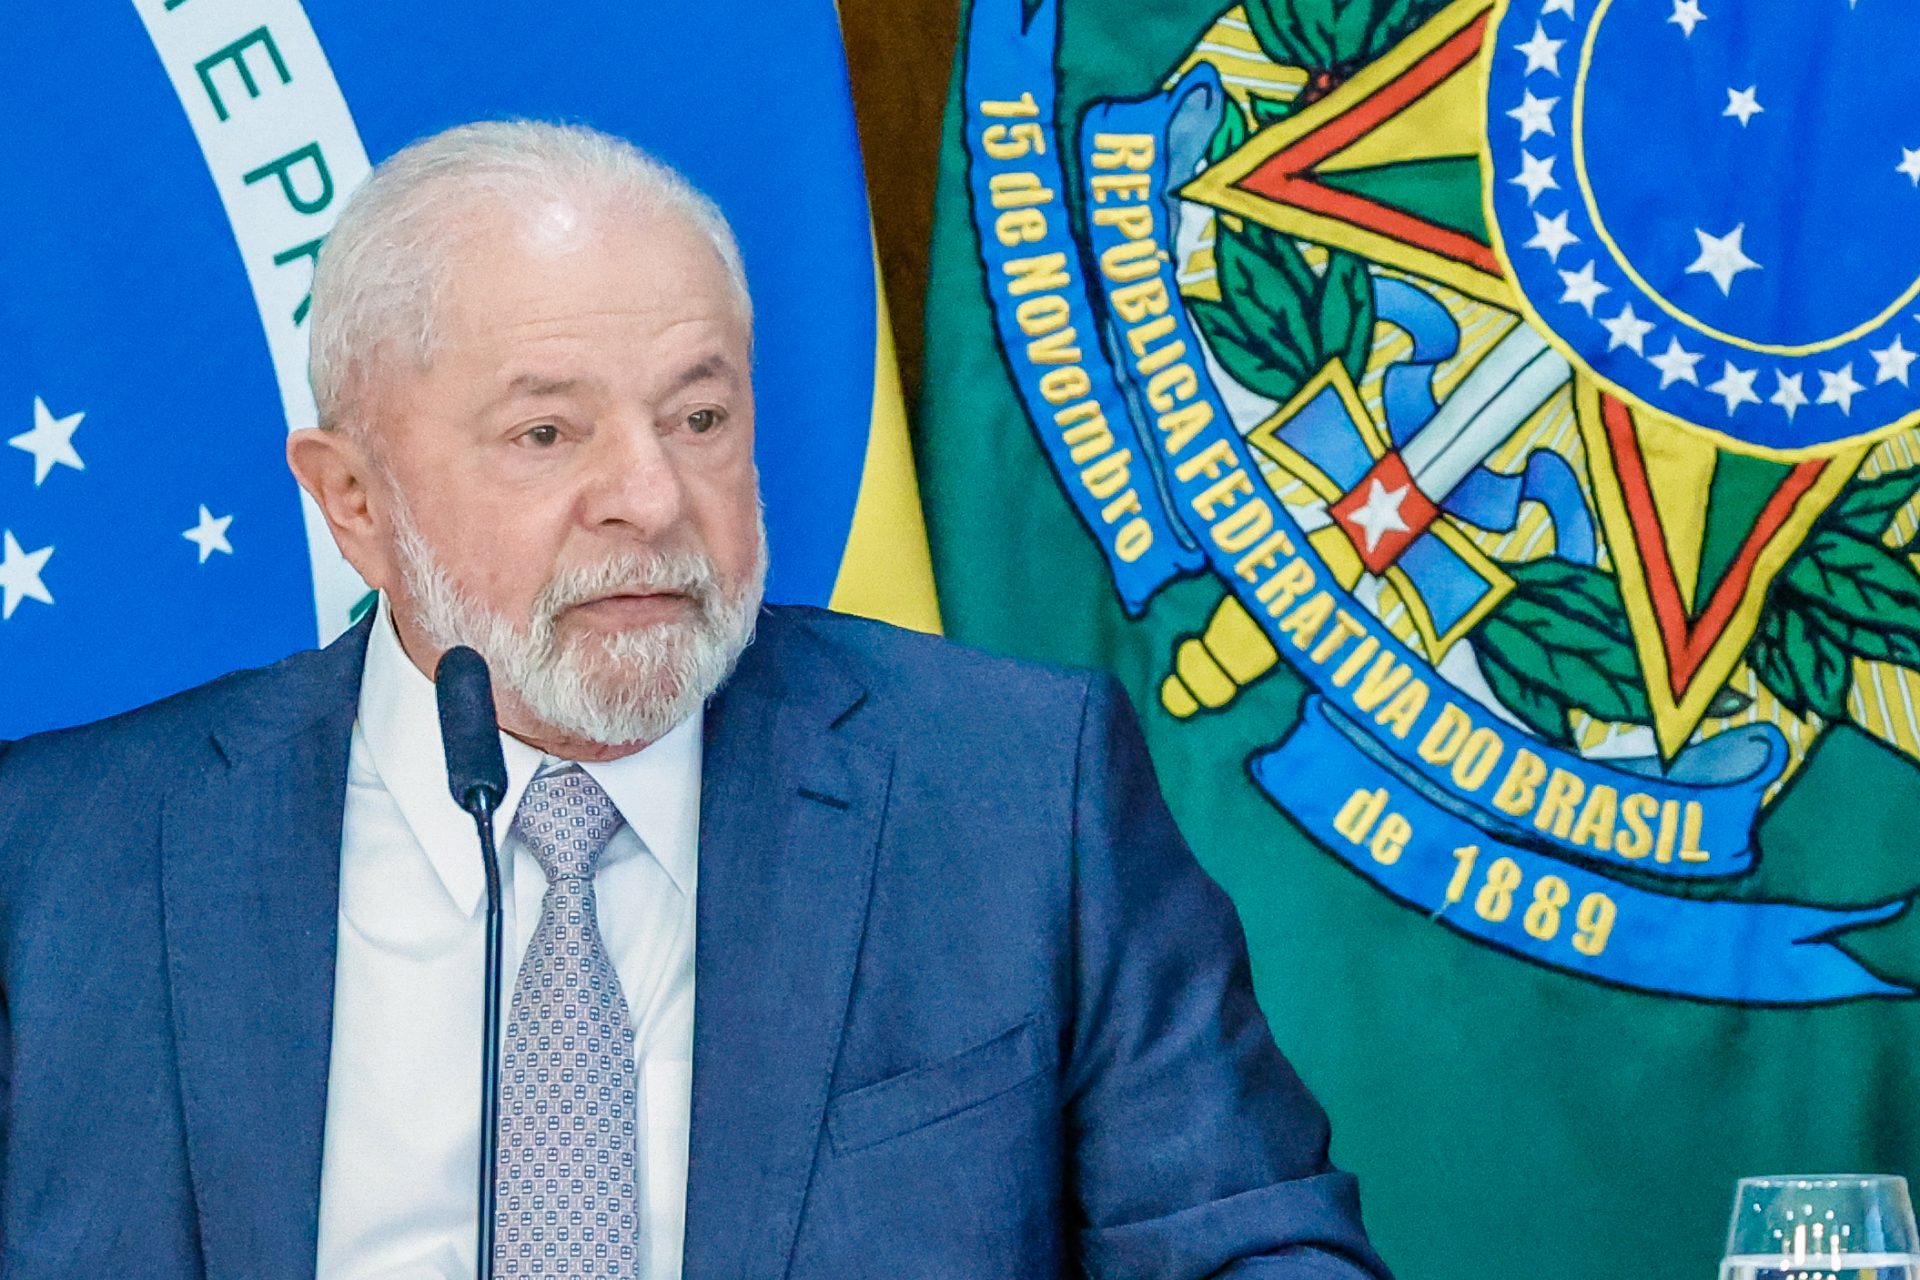 O presidente Lula faz primeira viagem internacional nesta segunda (27), após procedimento cirúrgico no quadril - Foto: Cláudio Kbene/PR